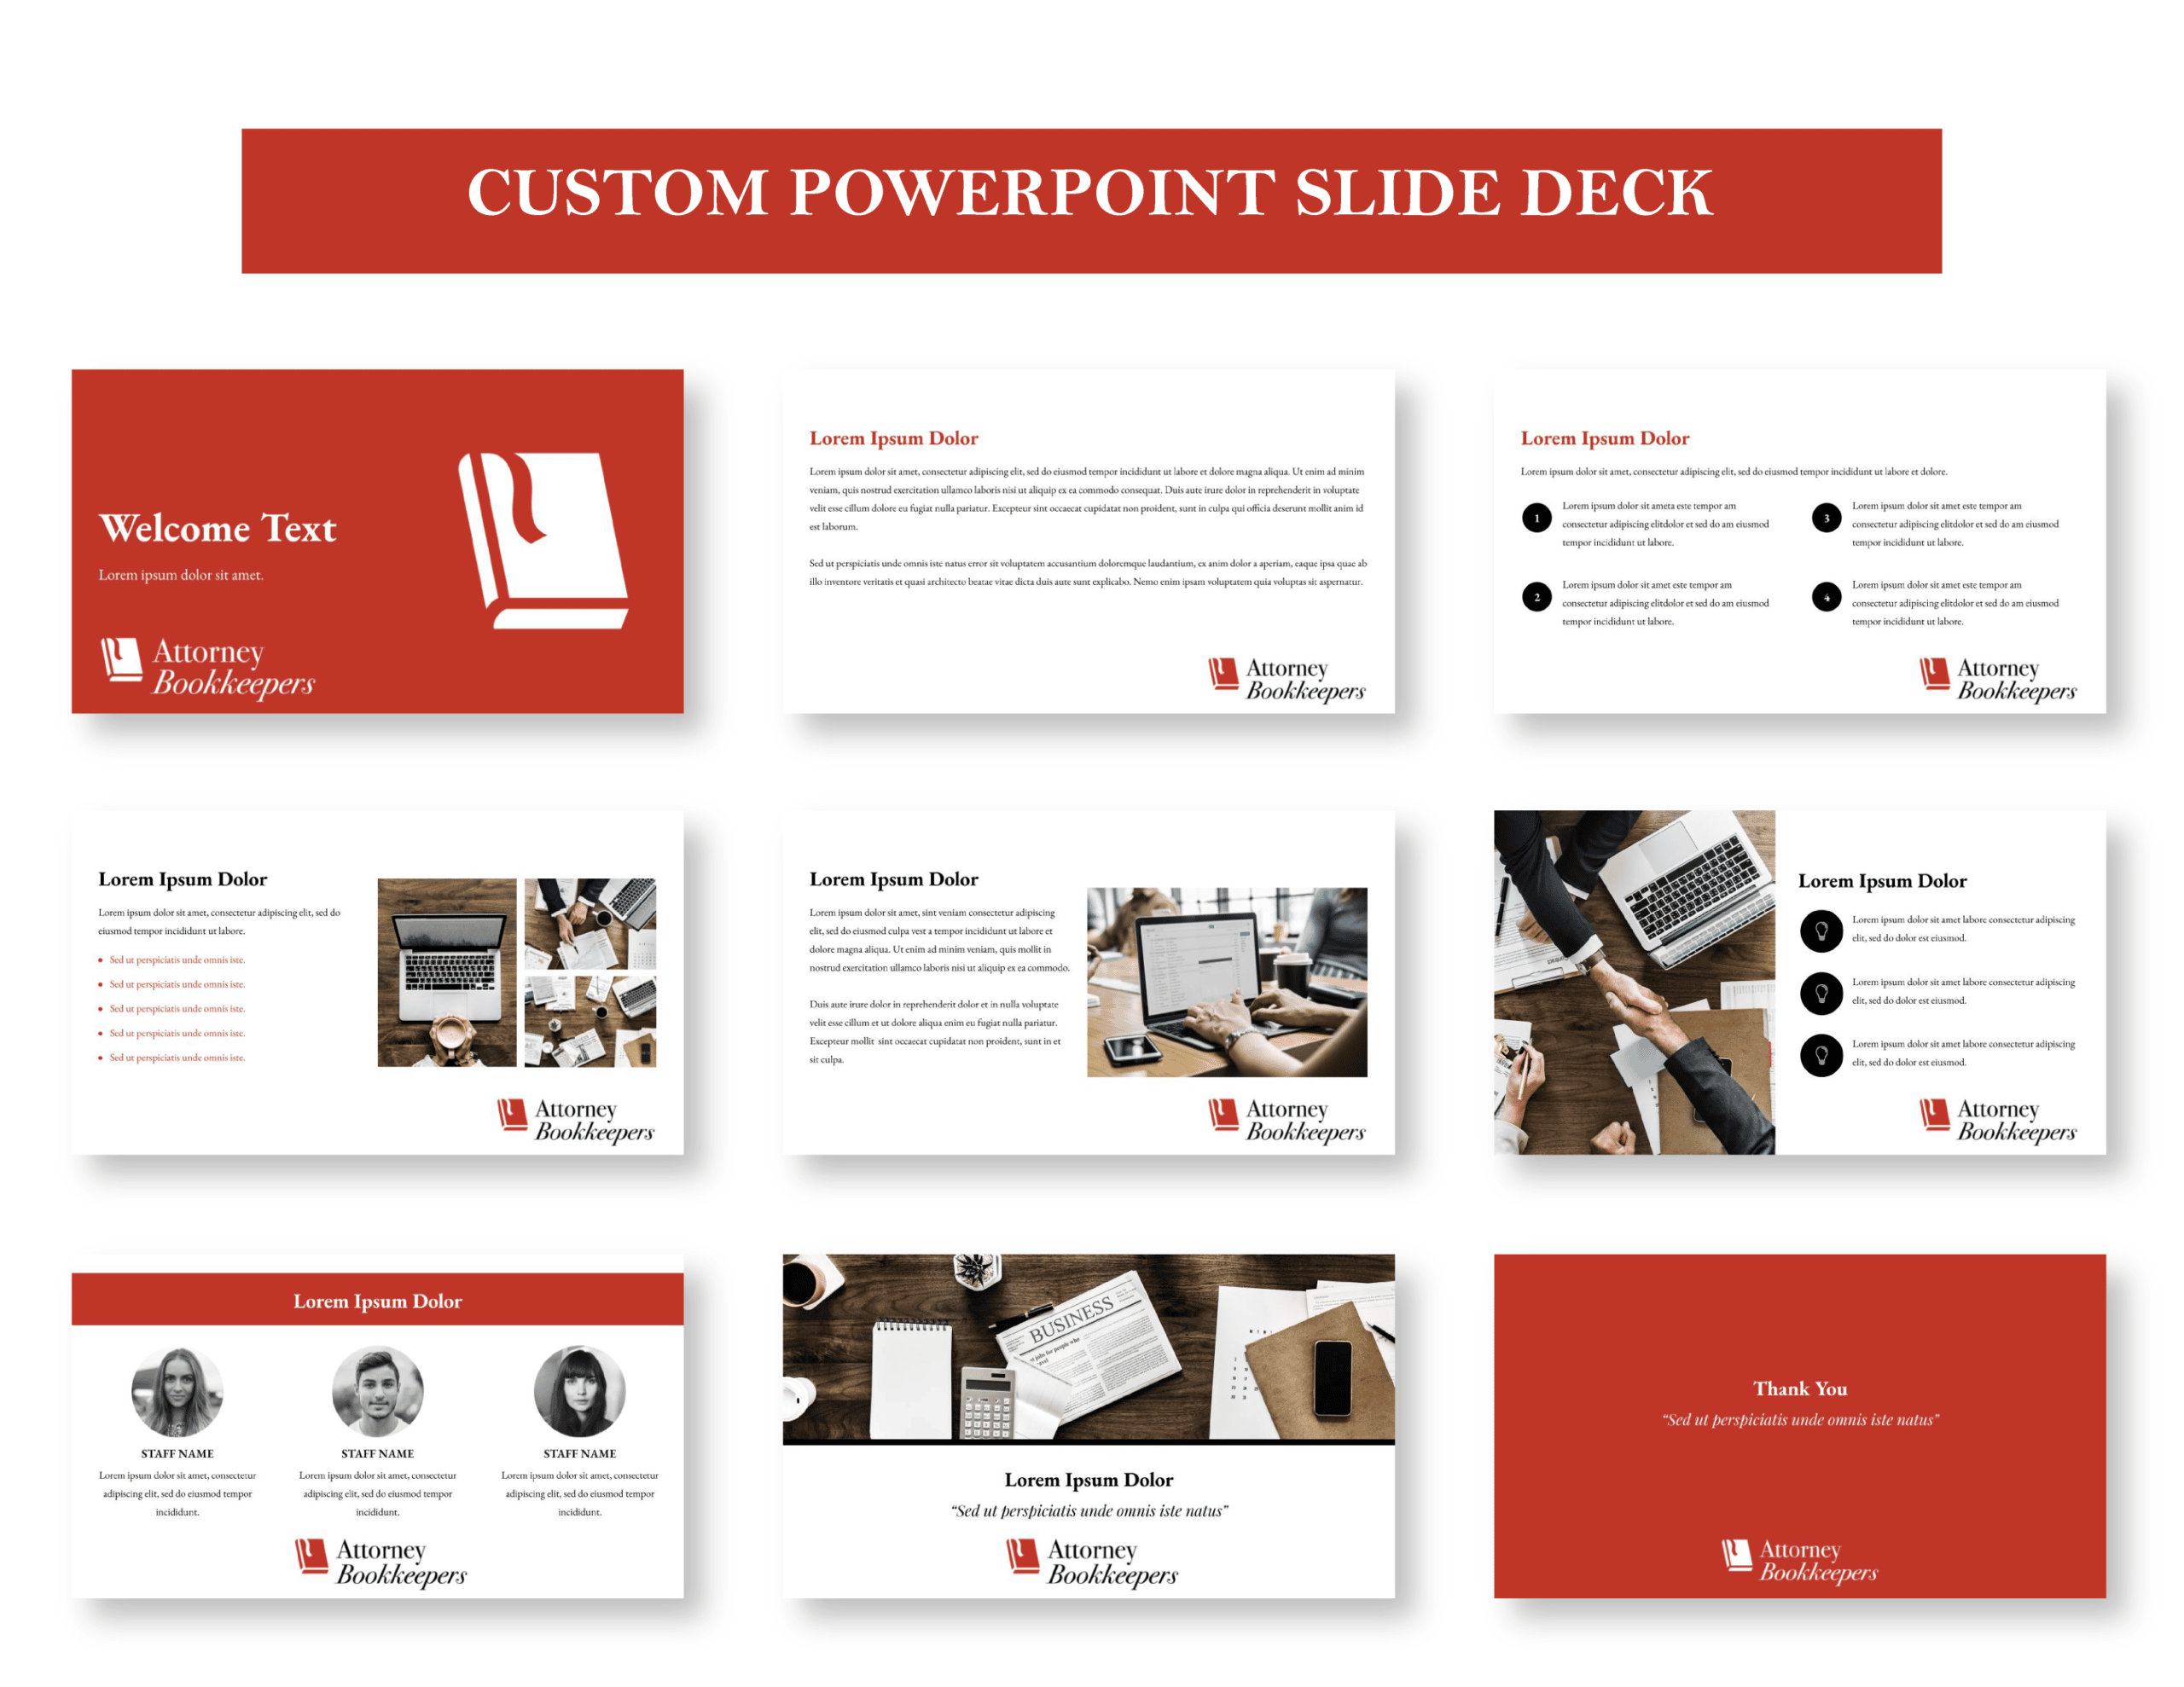 05AttorneyBookkeepERS_Showcase_Custom PowerPoint Slide Deck